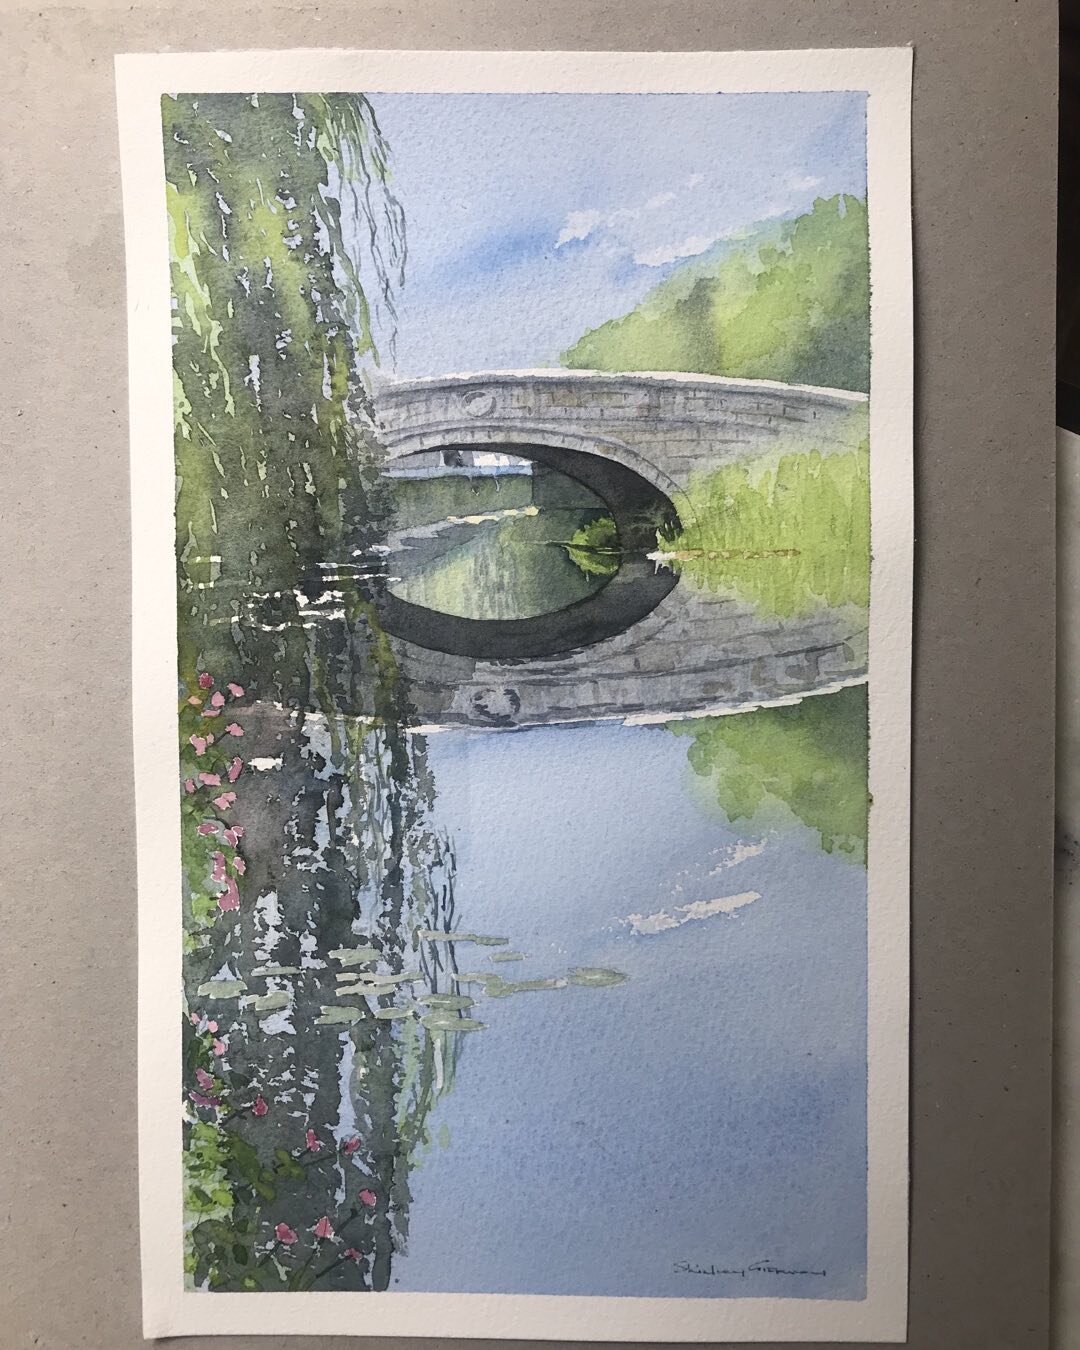 REFLECTION at&hellip;
The Grand Canal
Baggot Street Bridge, c. 1880
.
.

#watercolour
#watercolor
#watercolourpainting
#shirleygiffney 
#irishart
#watercolorpainting 
#irishartists
#irishartoninstagram
#dublincity